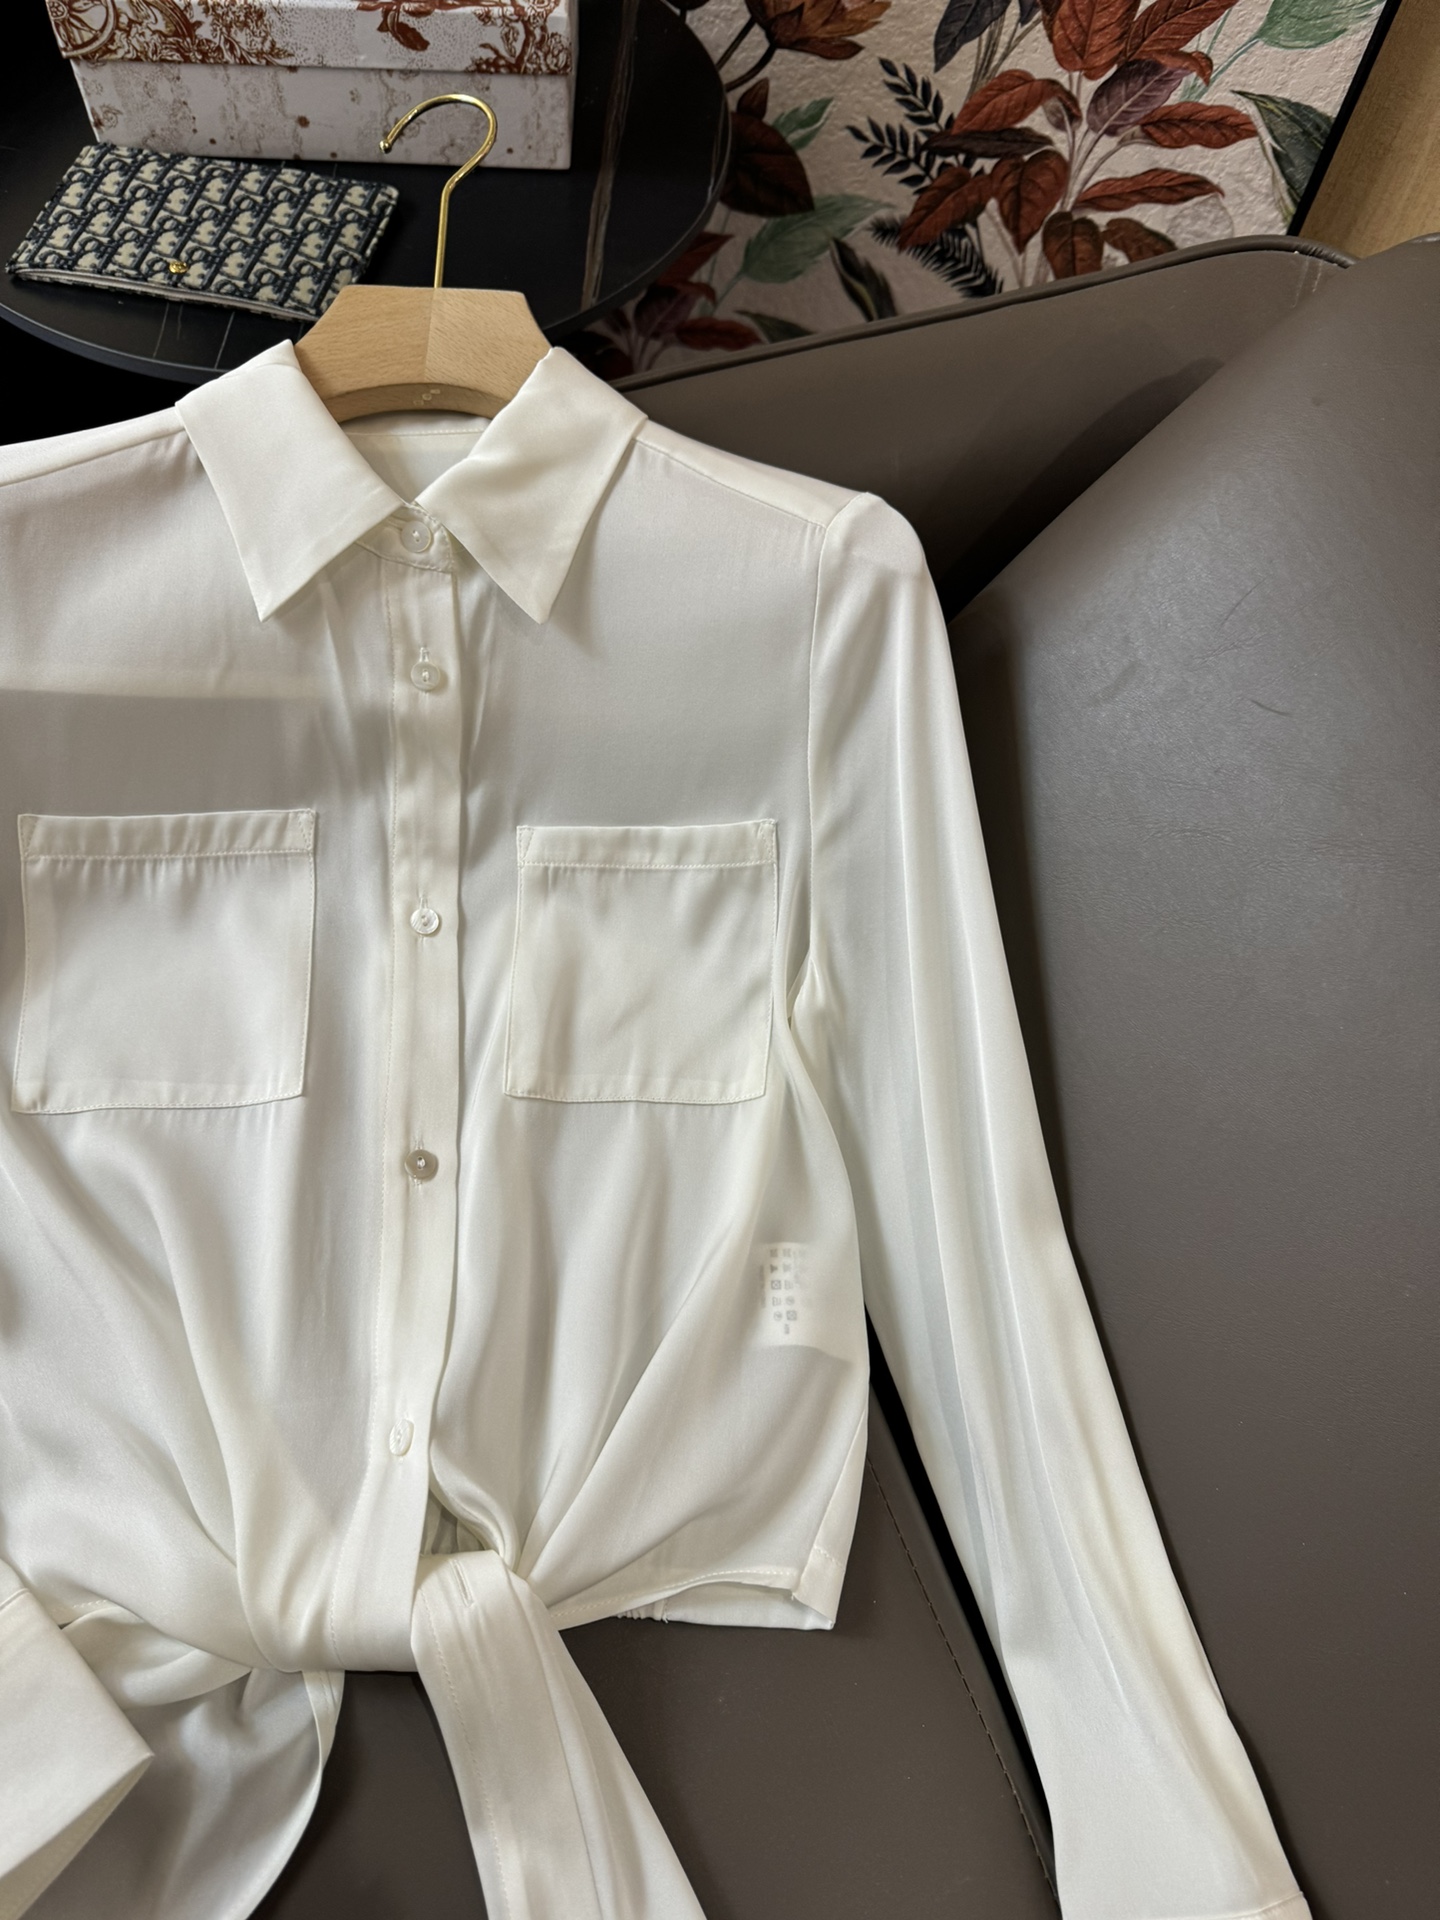 JF014#新款衬衫Theory100%真丝长袖衬衫黑色白色SMLXL